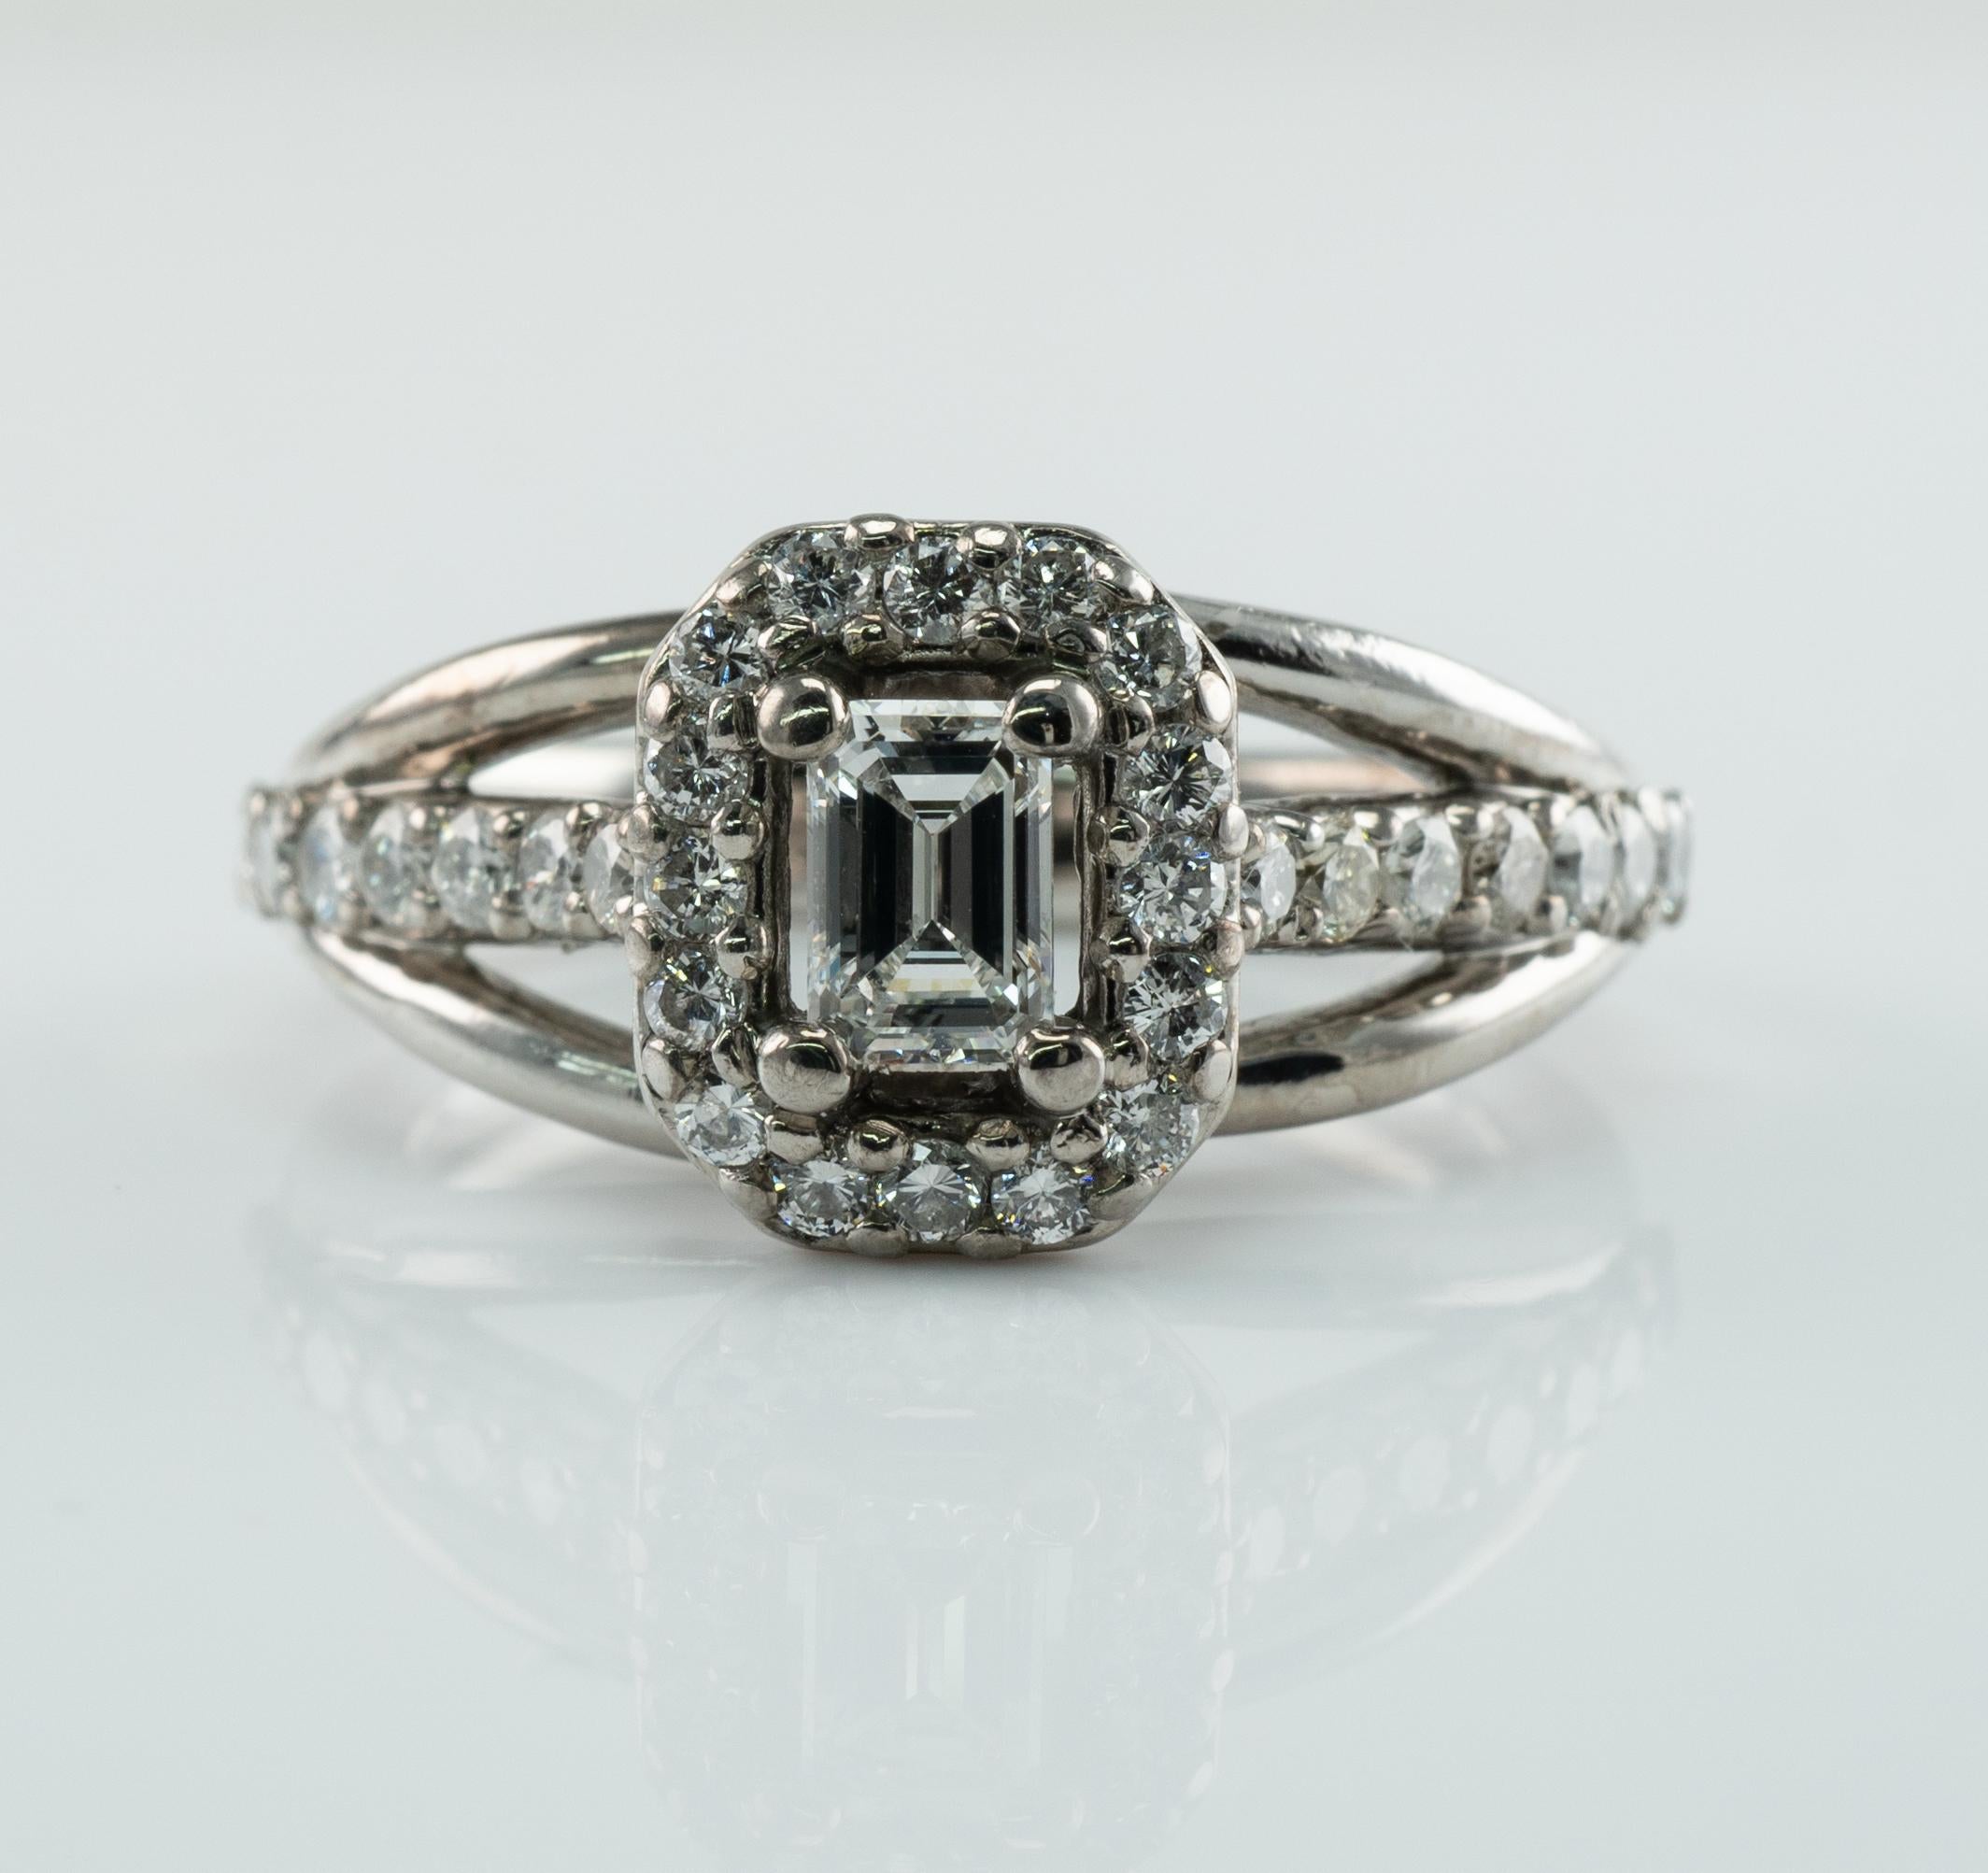 Dieser Nachlassring wäre ein wunderbarer Verlobungsring oder Ehering. 
Der Diamant im Smaragdschliff hat ein Gewicht von 0,23 Karat, die Reinheit beträgt VVS2 und die Farbe G.
30 Diamanten mit rundem Schliff in den Reinheitsgraden SI1-SI2 und der